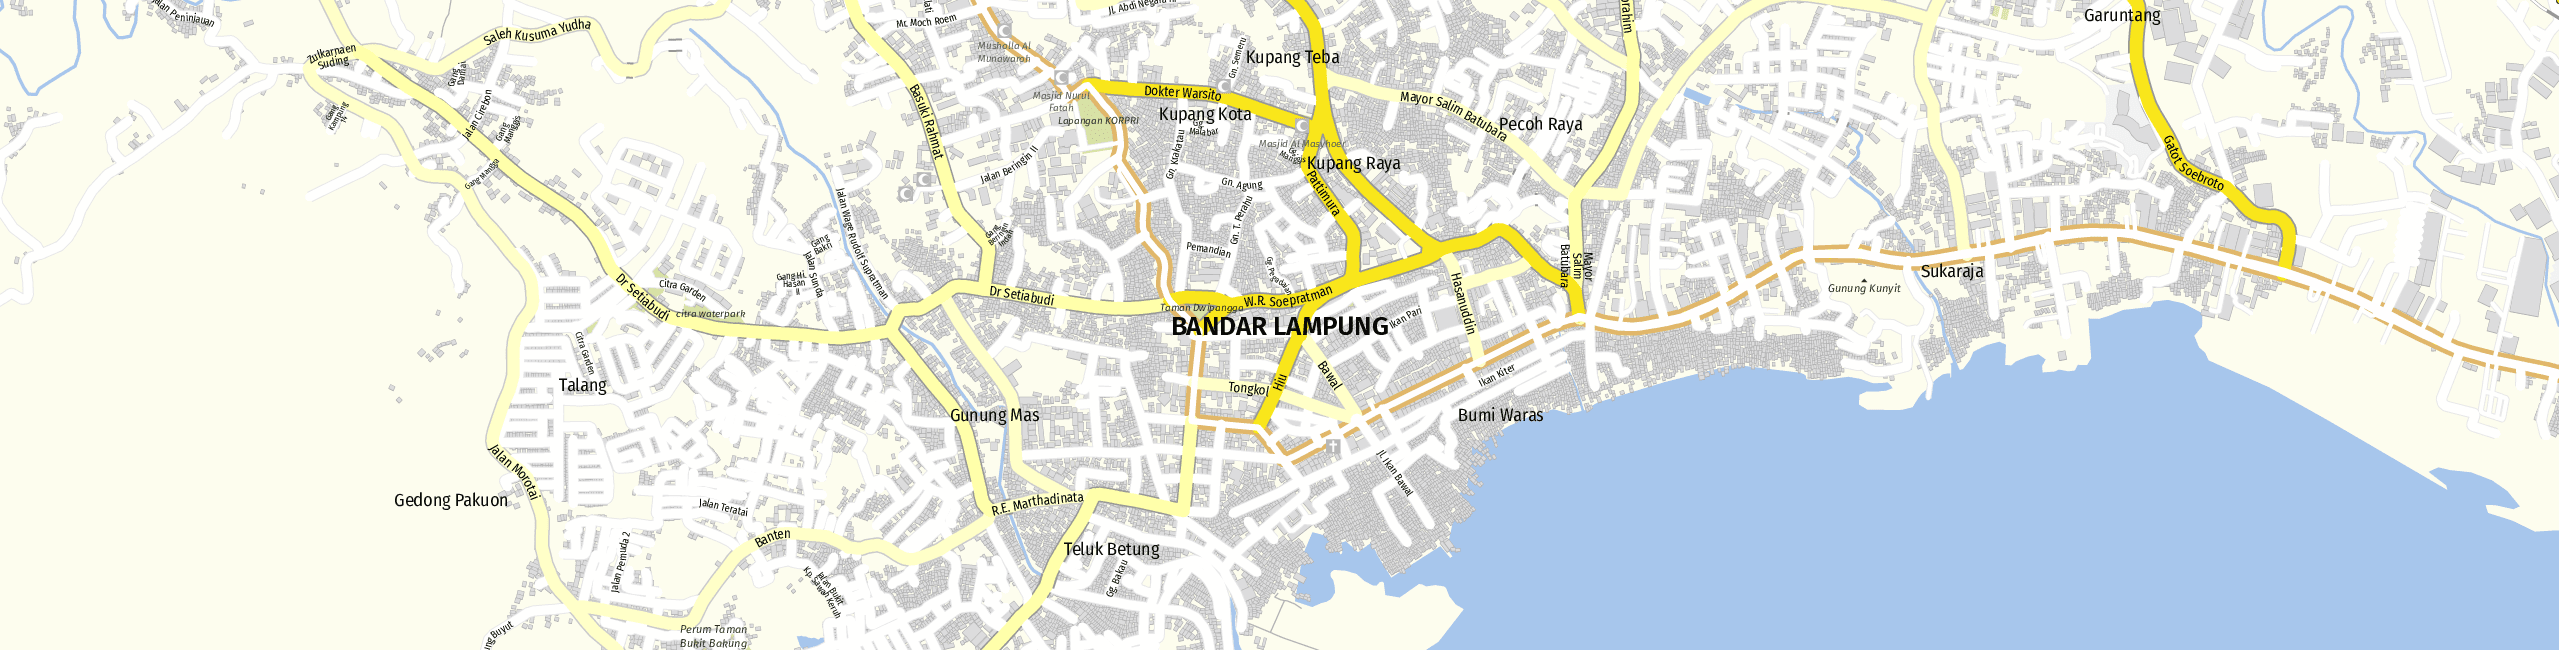 Stadtplan Bandar Lampung zum Downloaden.